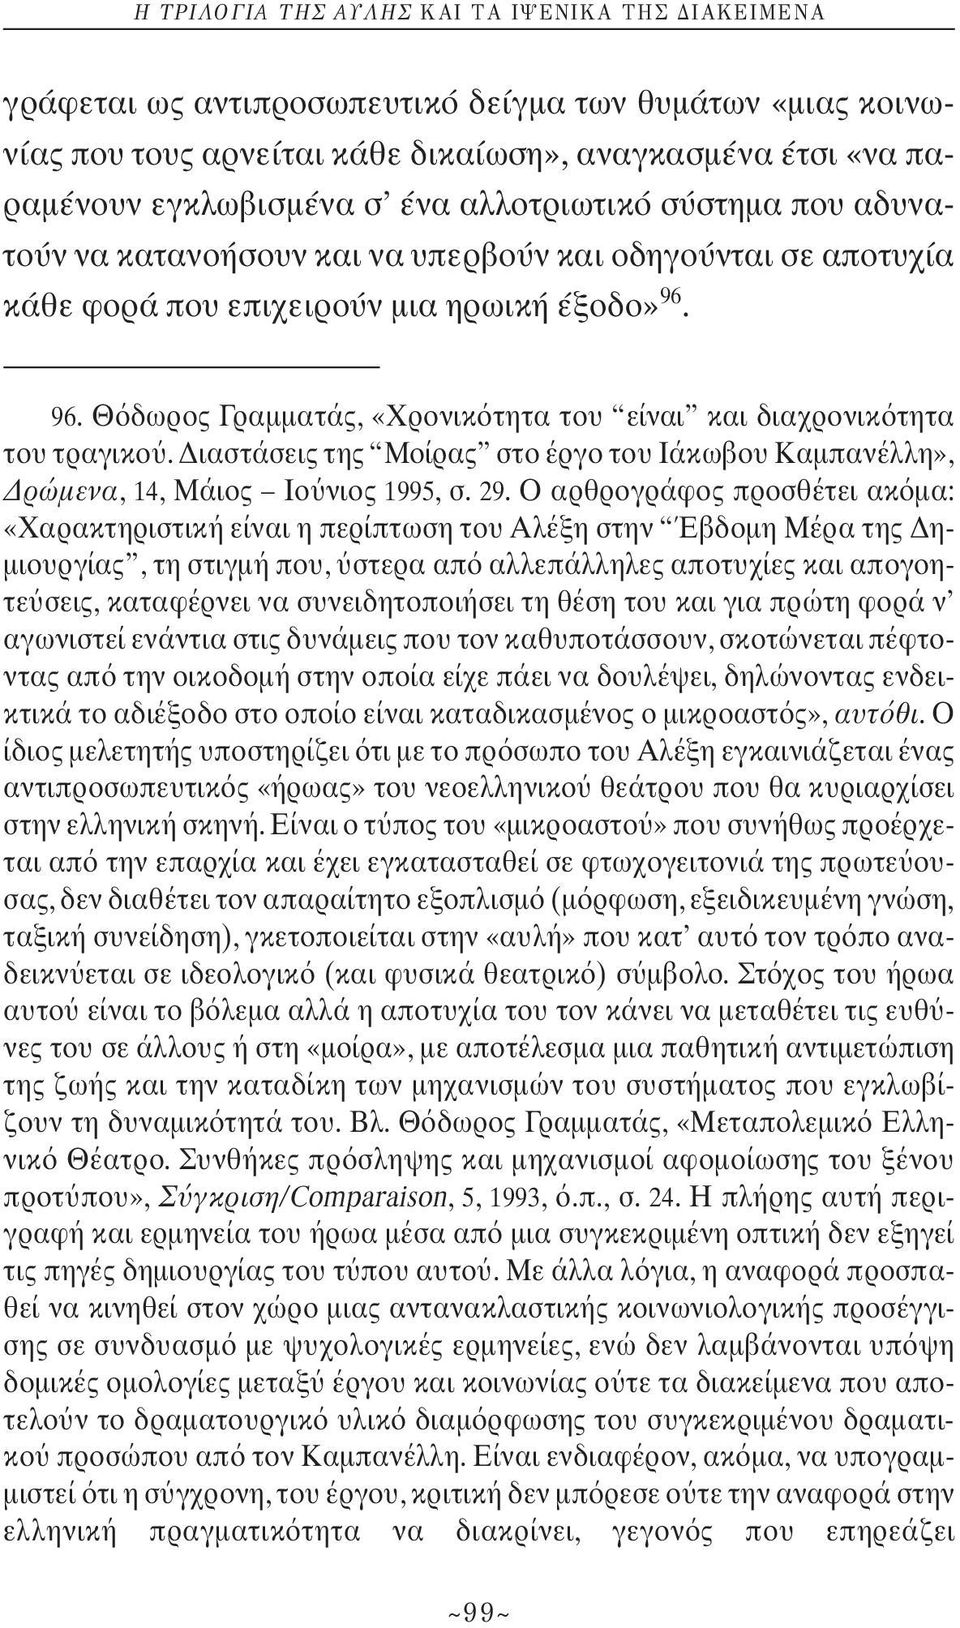 Διαστάσεις της Μοίρας στο έργο του Ιάκωβου Καμπανέλλη», Δρώμενα, 14, Μάιος Ιο νιος 1995, σ.29.